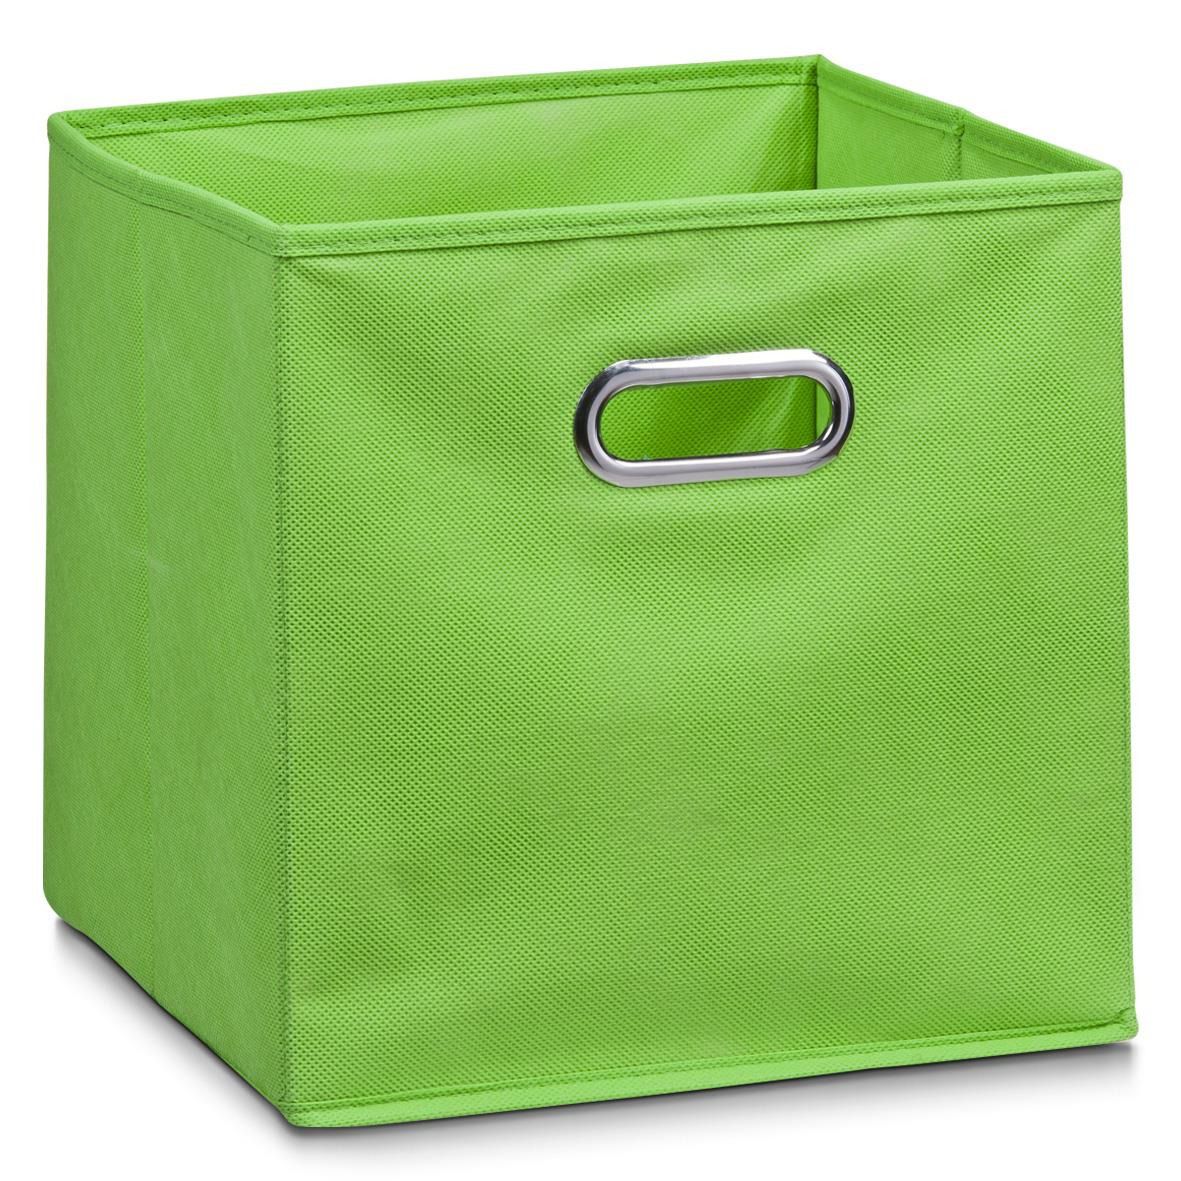 Koš pro skladování potravin, organizér, zelená barva, 32 x 32 x 32 cm, ZELLER - EMAKO.CZ s.r.o.